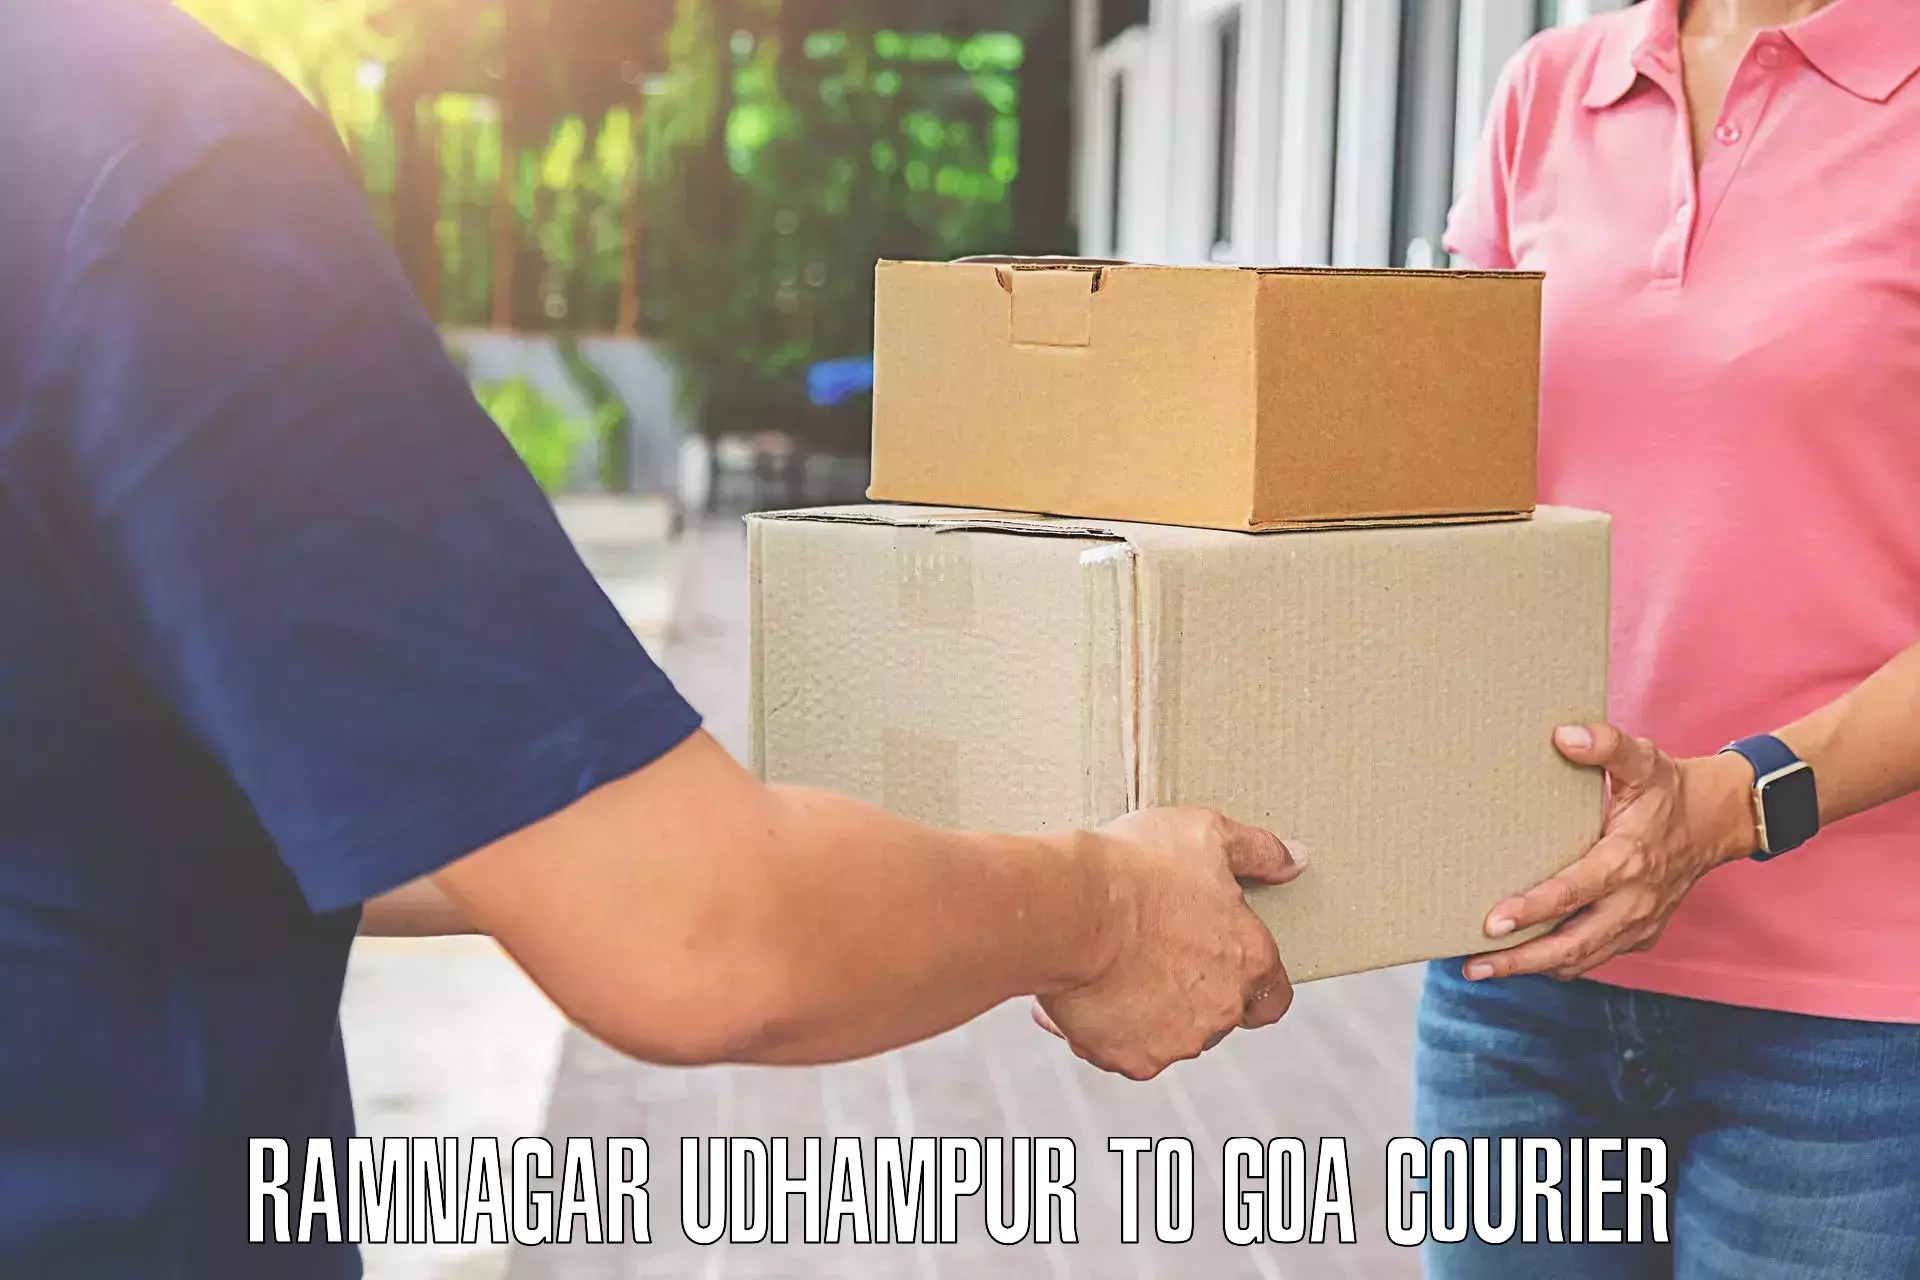 Luggage shipment specialists Ramnagar Udhampur to Vasco da Gama